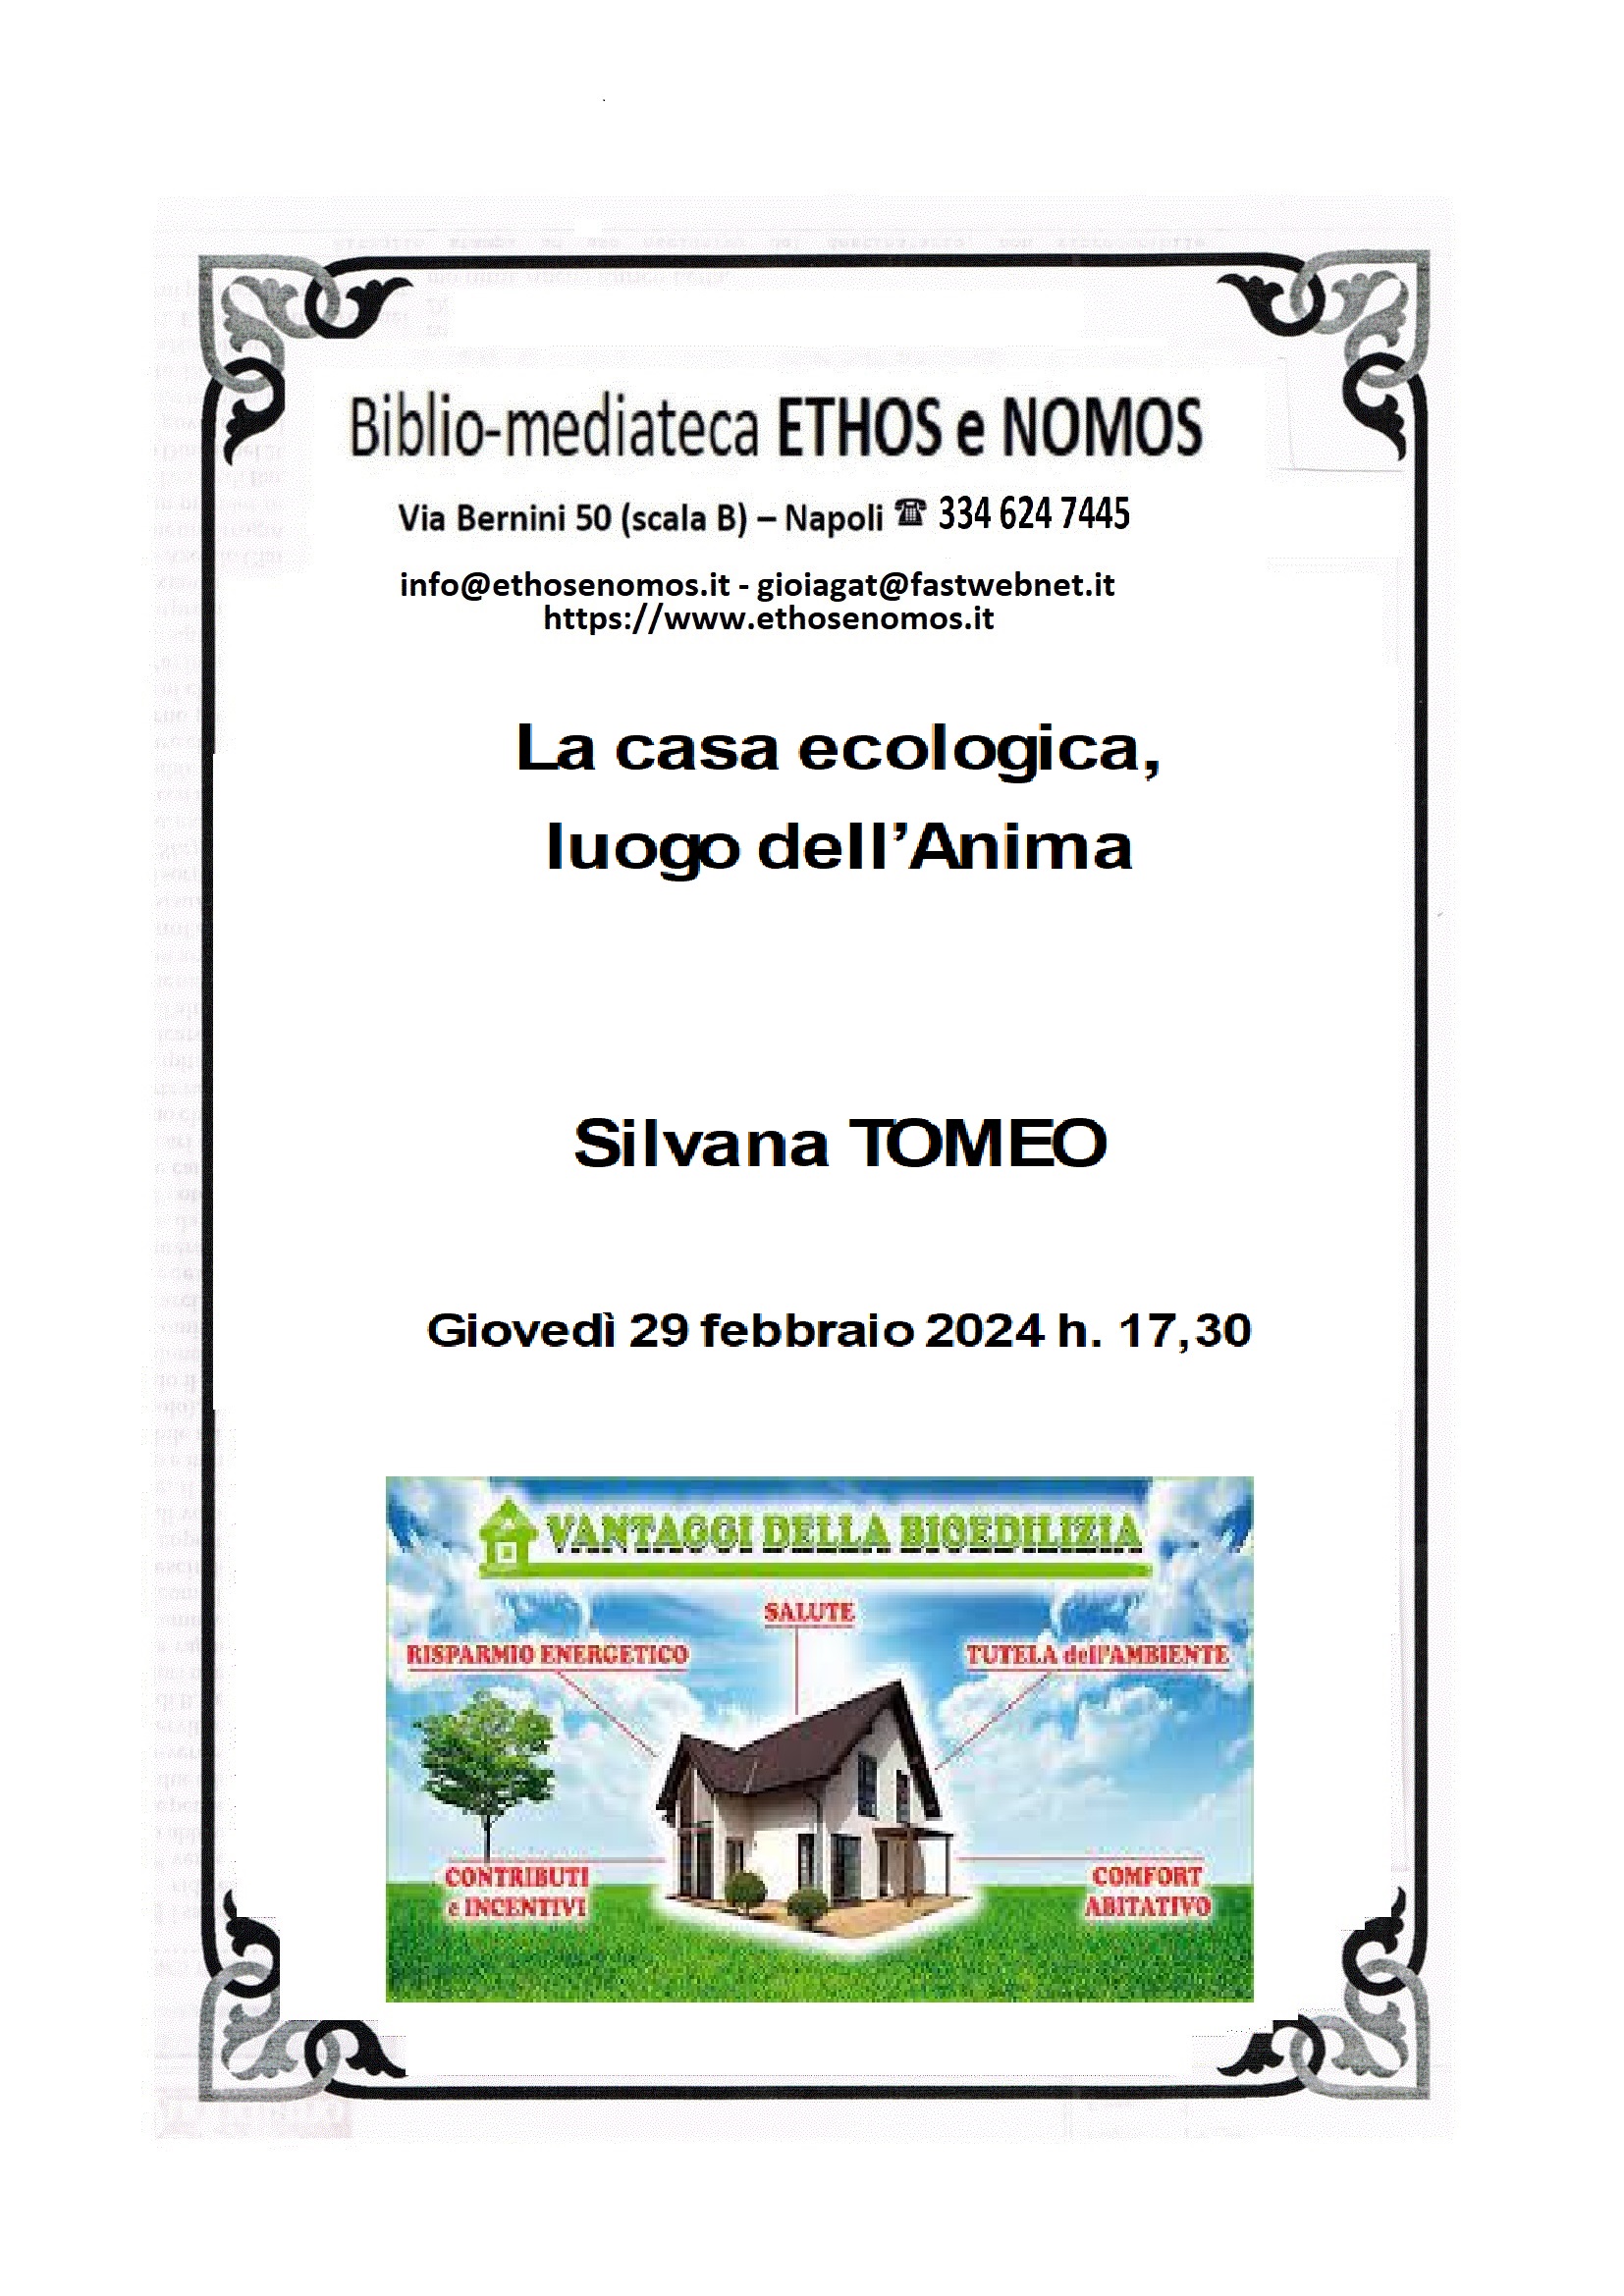 Silvana Tomeo - La casa ecologica, luogo dell'Anima